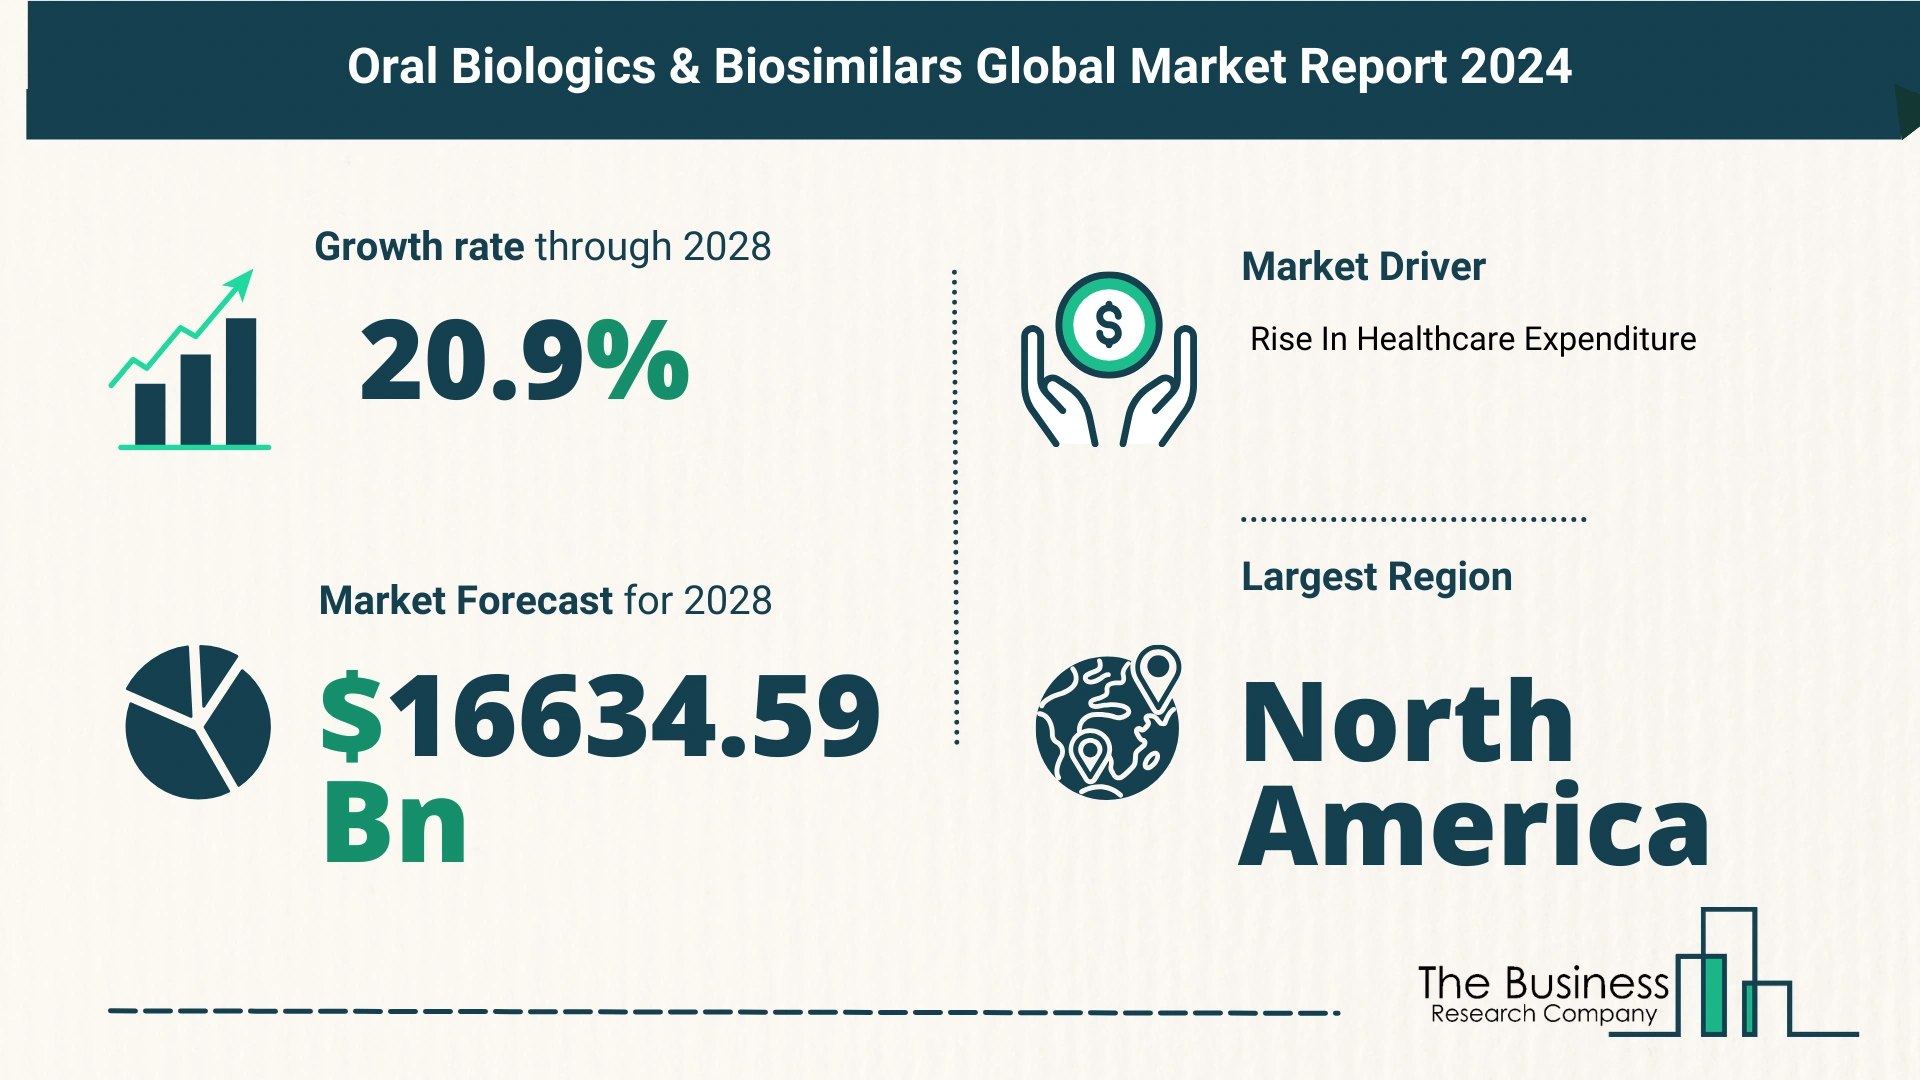 Global Oral Biologics & Biosimilars Market